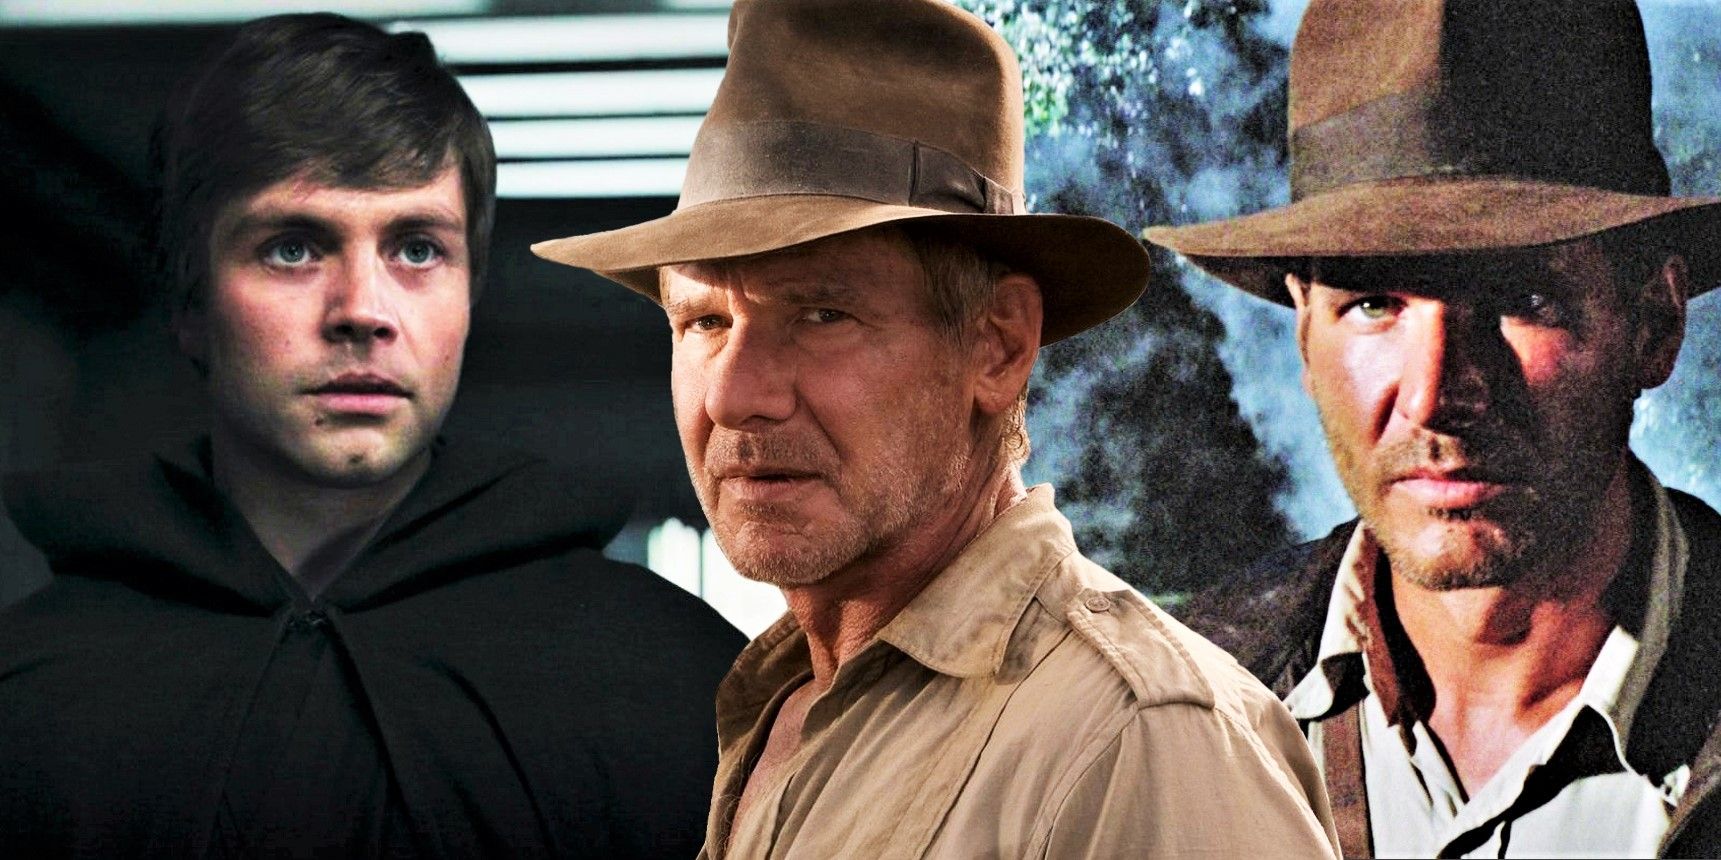 Indiana Jones 5 features old Indiana Jones and De-aged Indiana Jones